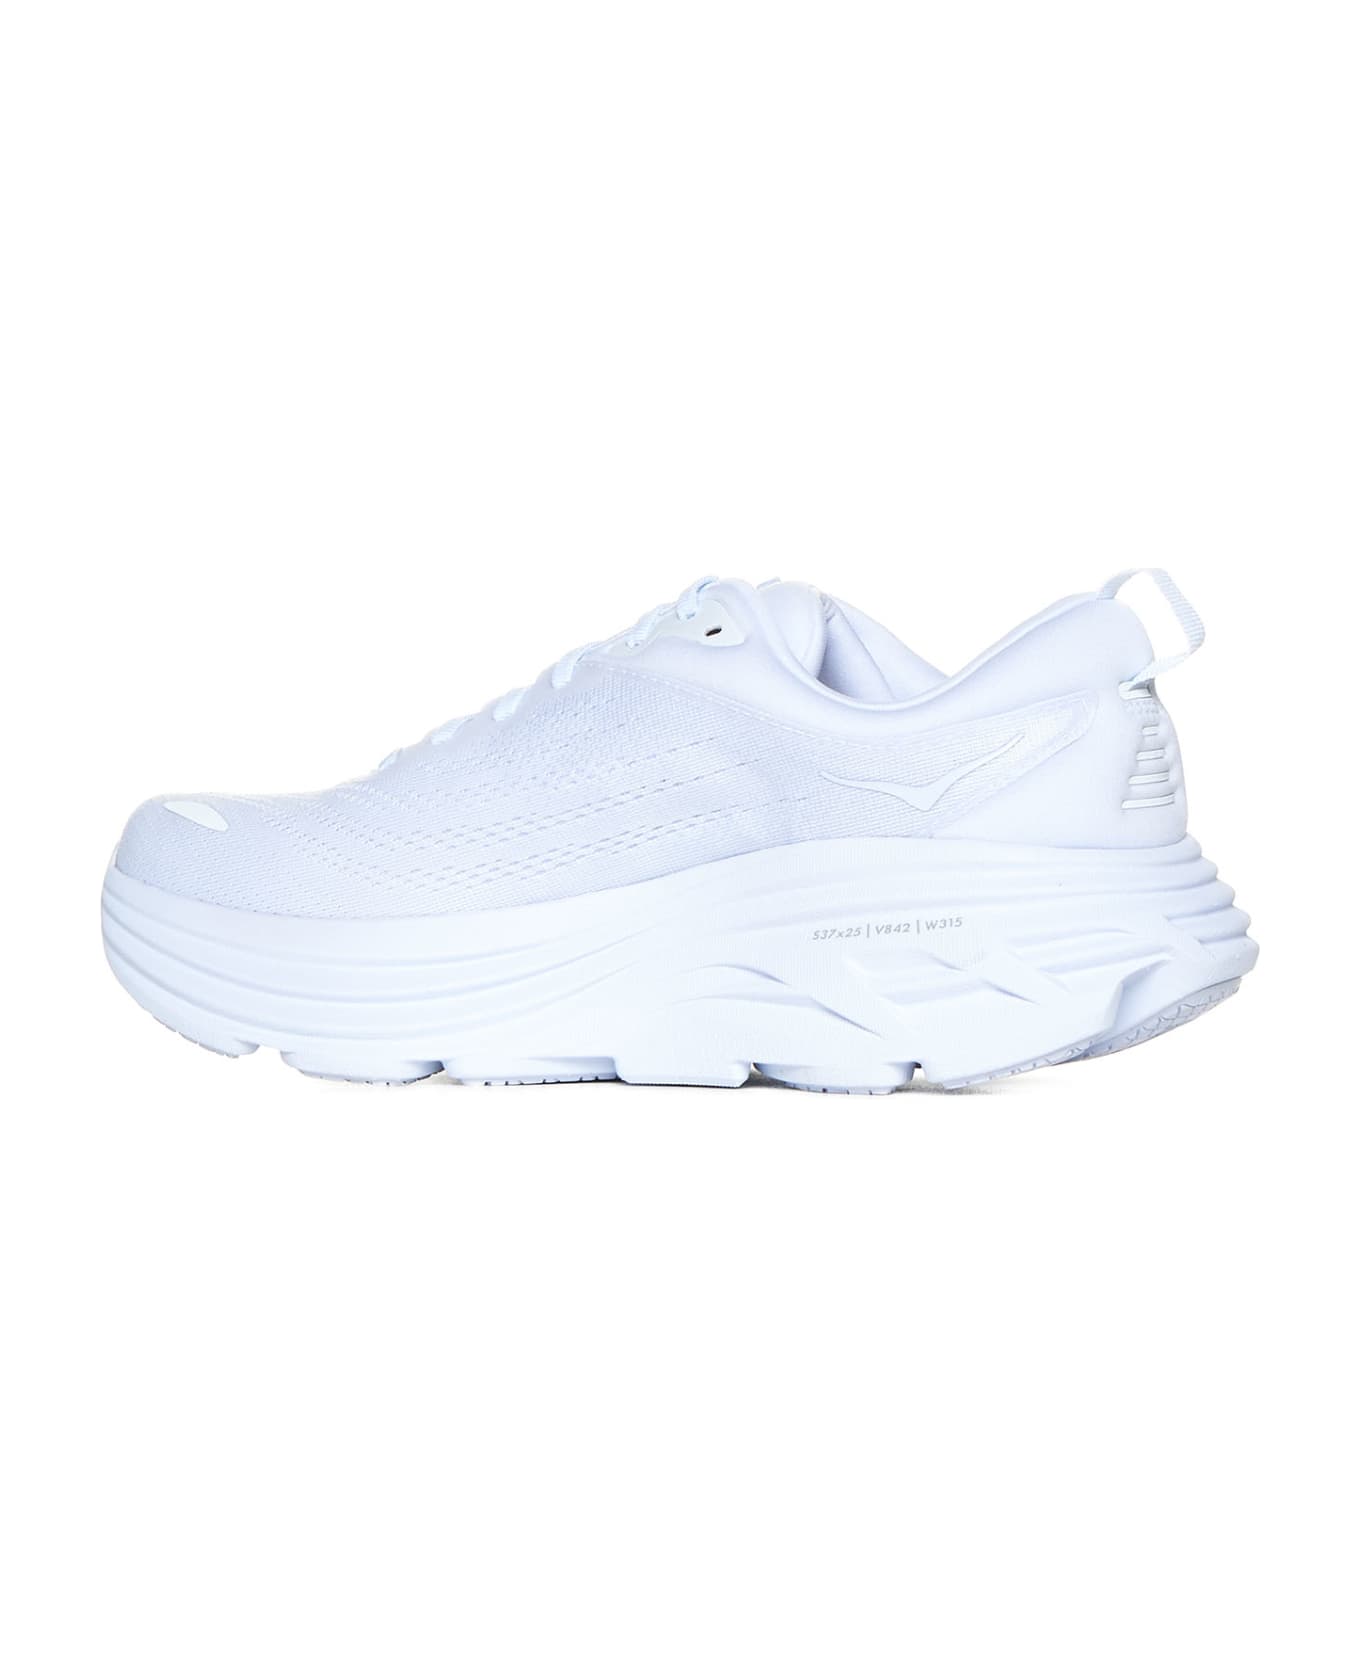 Hoka Sneakers - White white